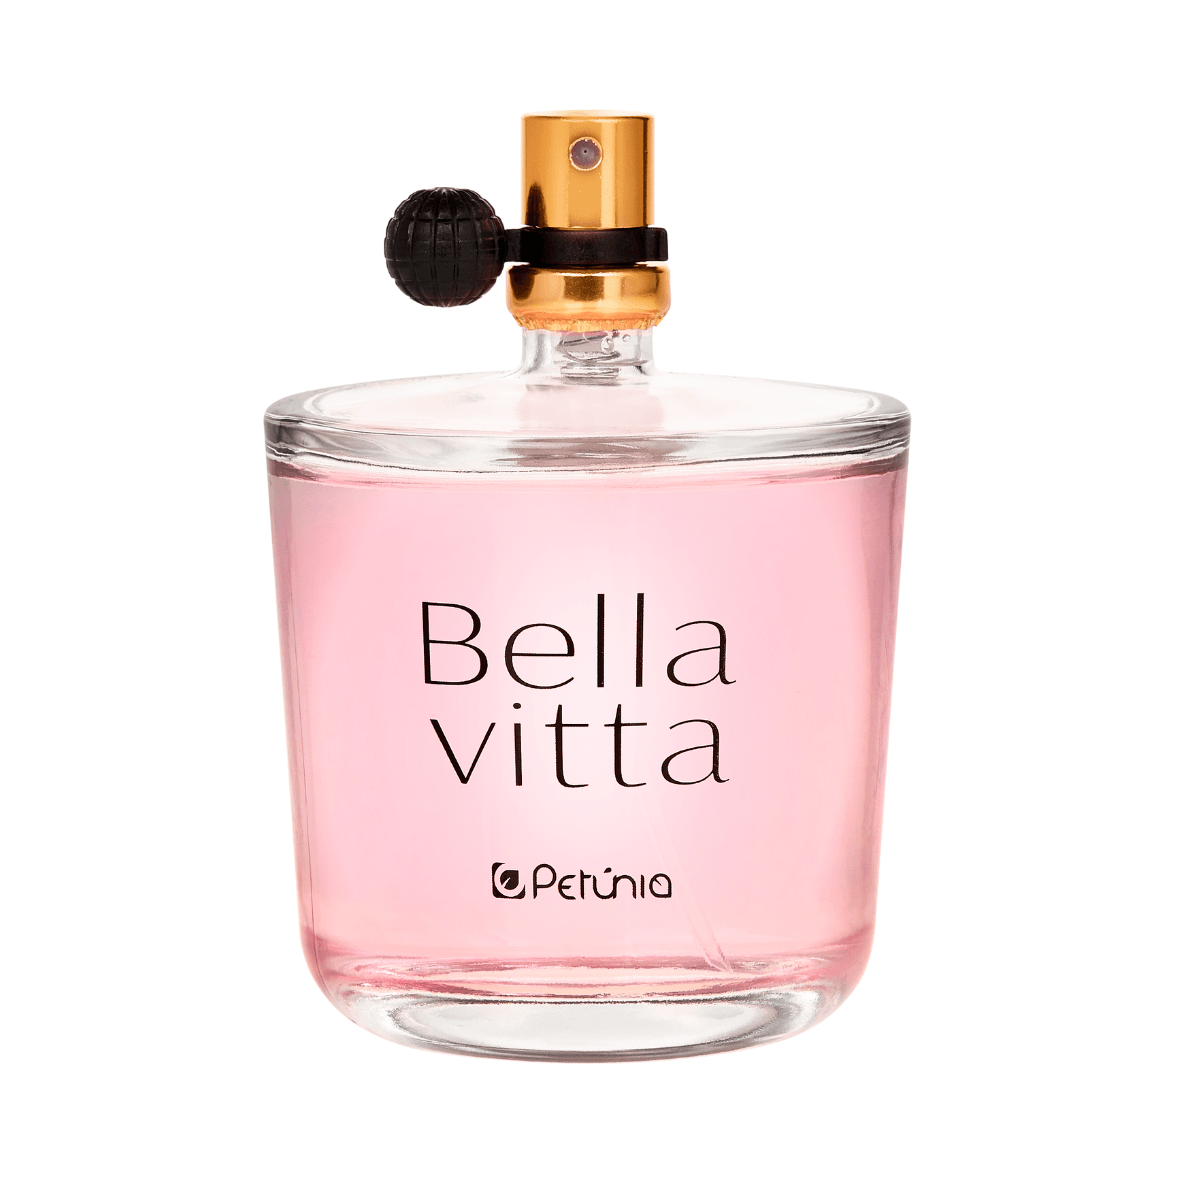 Perfume--Feminino-Eau-De-Toilette-Bella-Vitta-100Ml---Petunia-YEN-1.42011.0